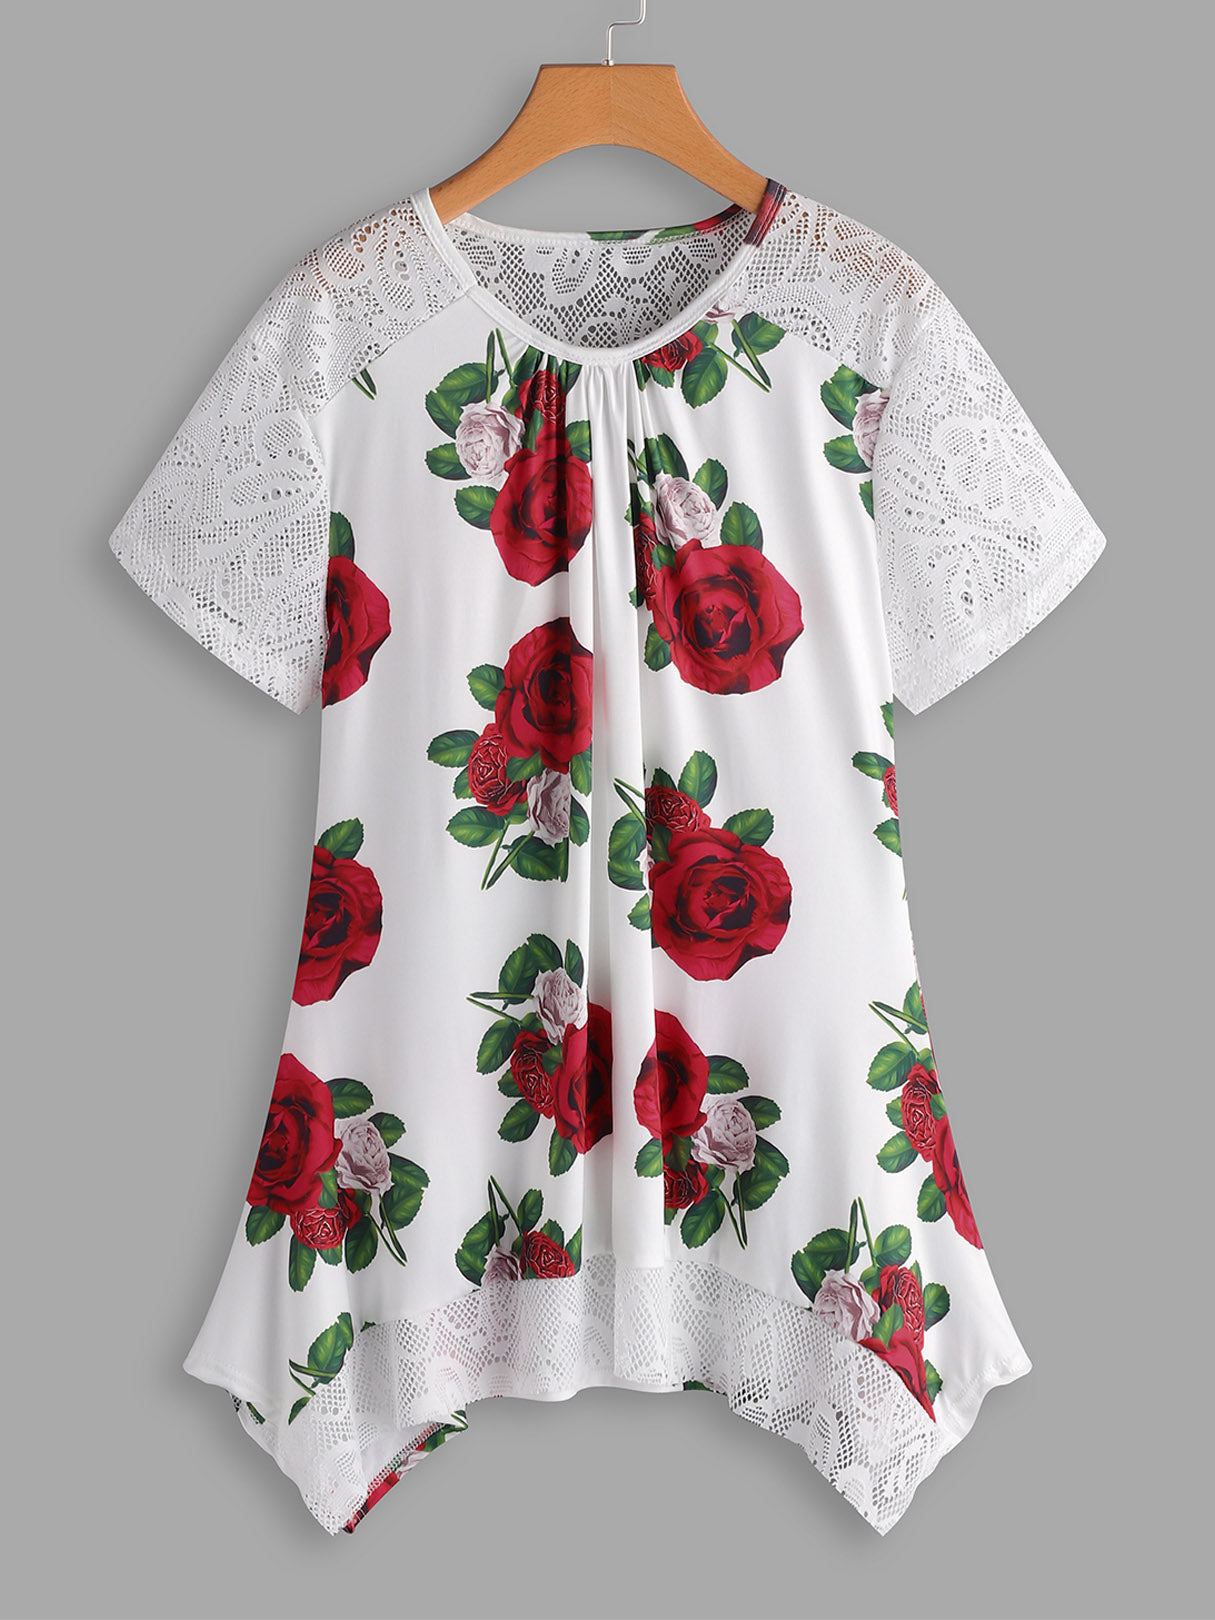 Wholesale Round Neck Floral Print Lace Short Sleeve Handkerchief Hem White Plus Size Tops